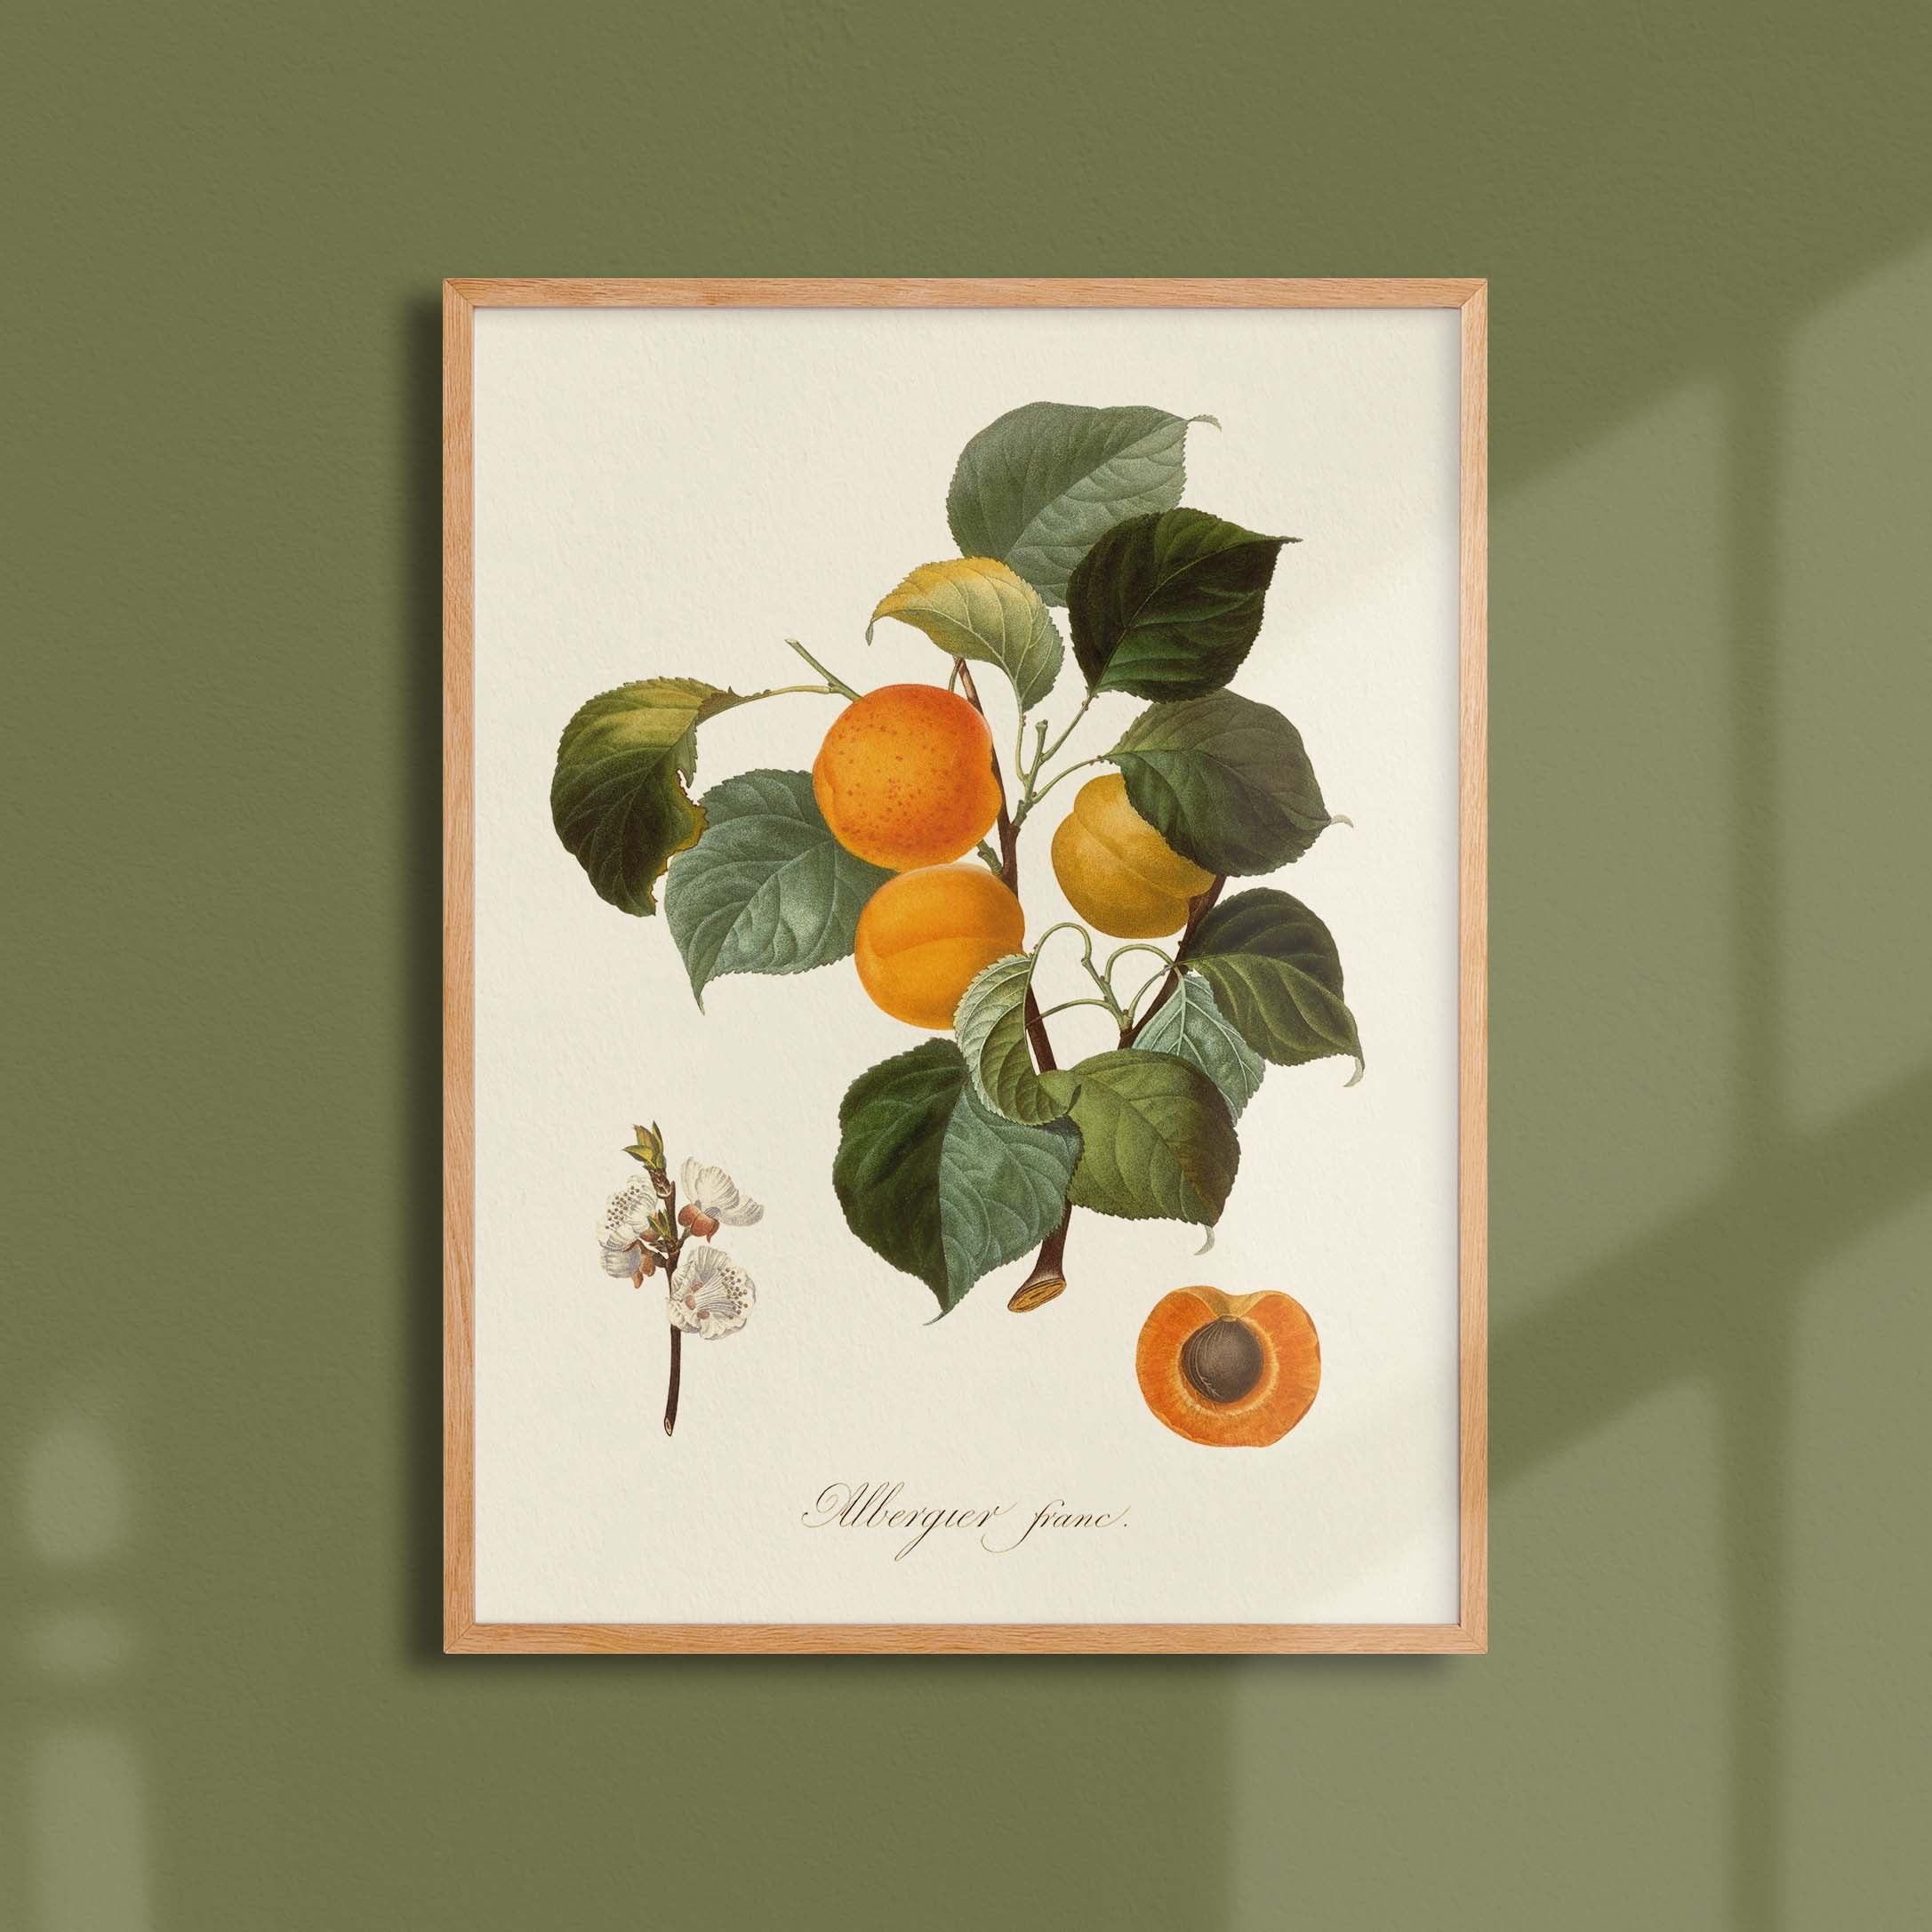 Planche botanique fruit - Albergier franc-oneart.fr